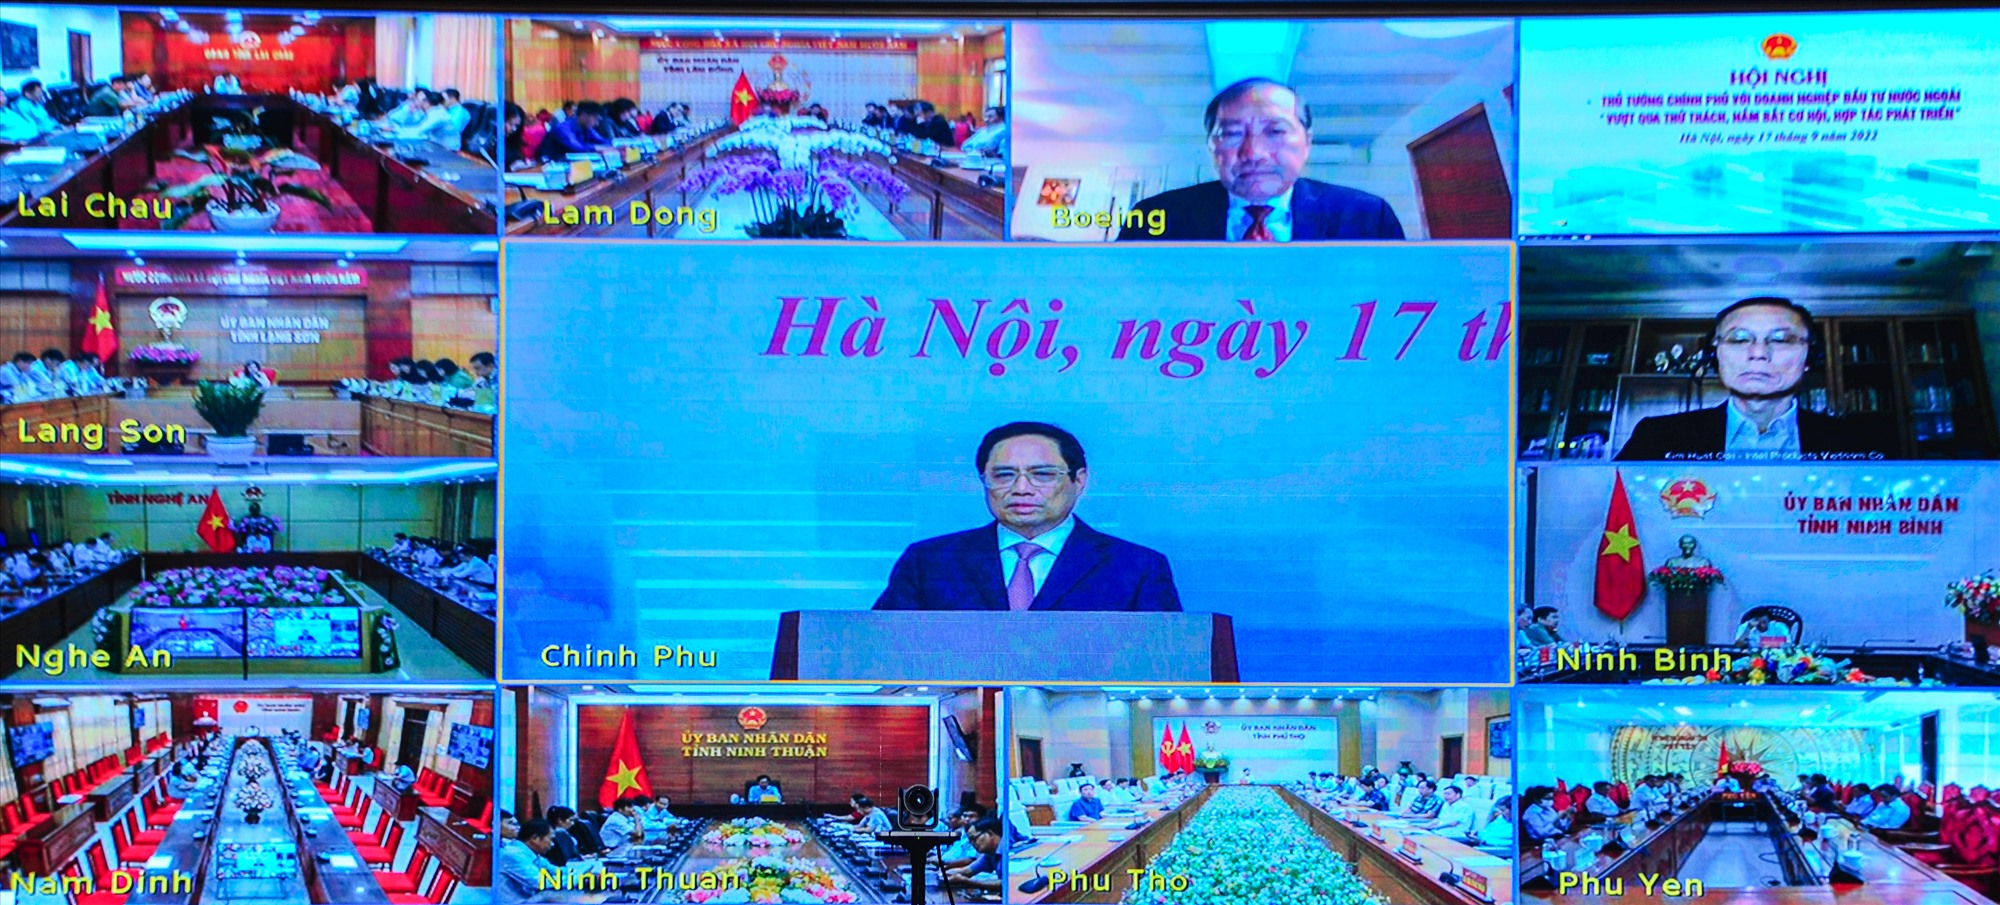 Hội nghị được kết nối đến 63 tỉnh, thành trong cả nước và 80 điểm cầu của doanh nghiệp nước ngoài ở trong và ngoài nước - Ảnh: Trần Tuyền